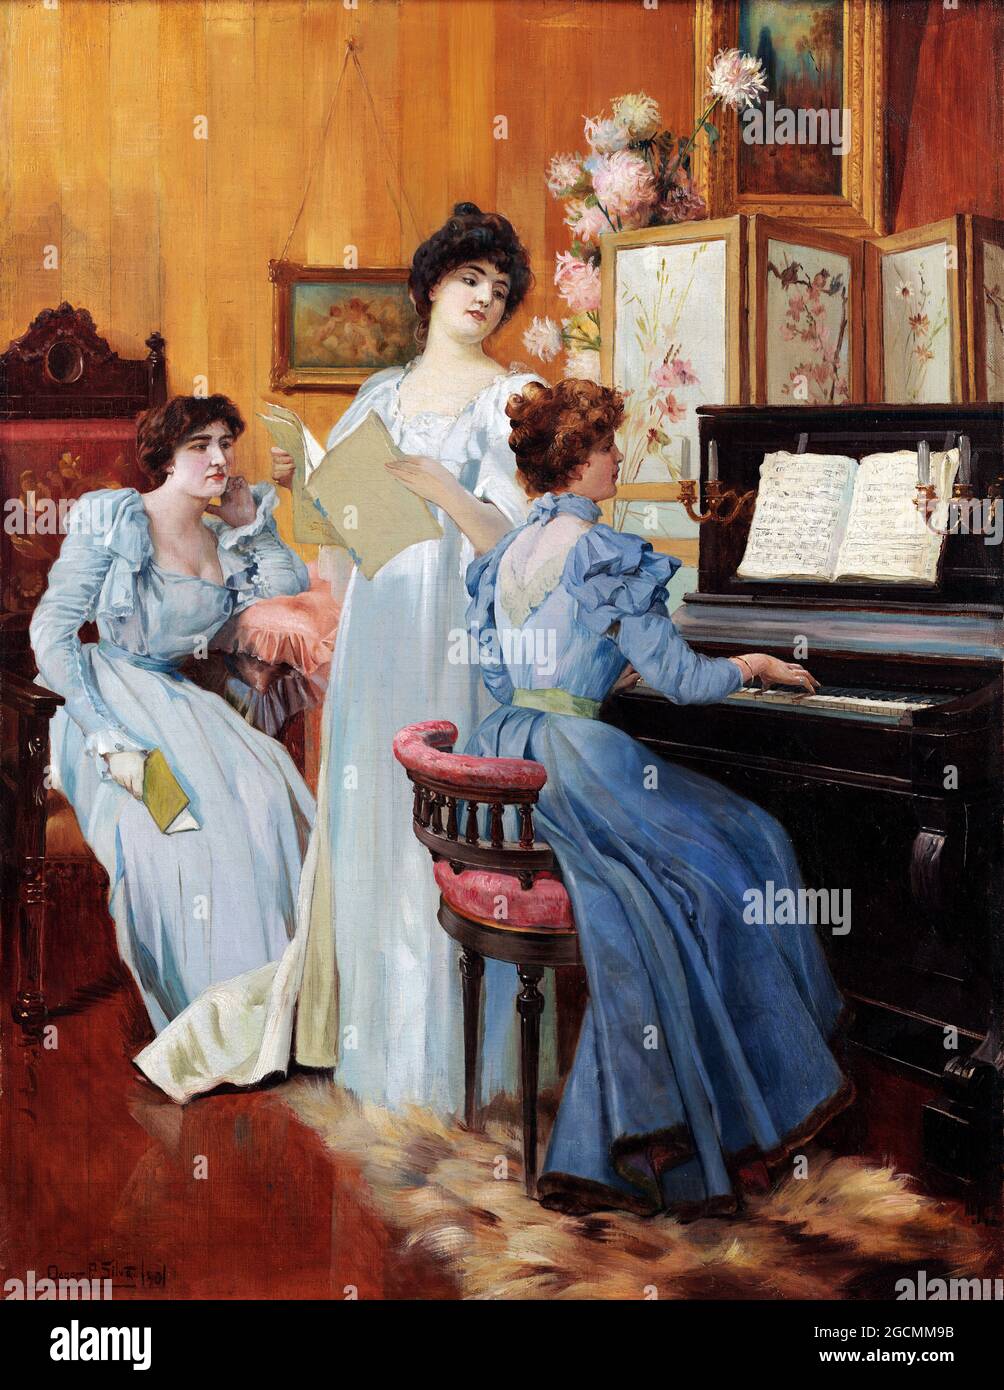 Hora da Musica de Oscar Pereira da Silva (1867-1939), óleo sobre lienzo, 1901 Foto de stock